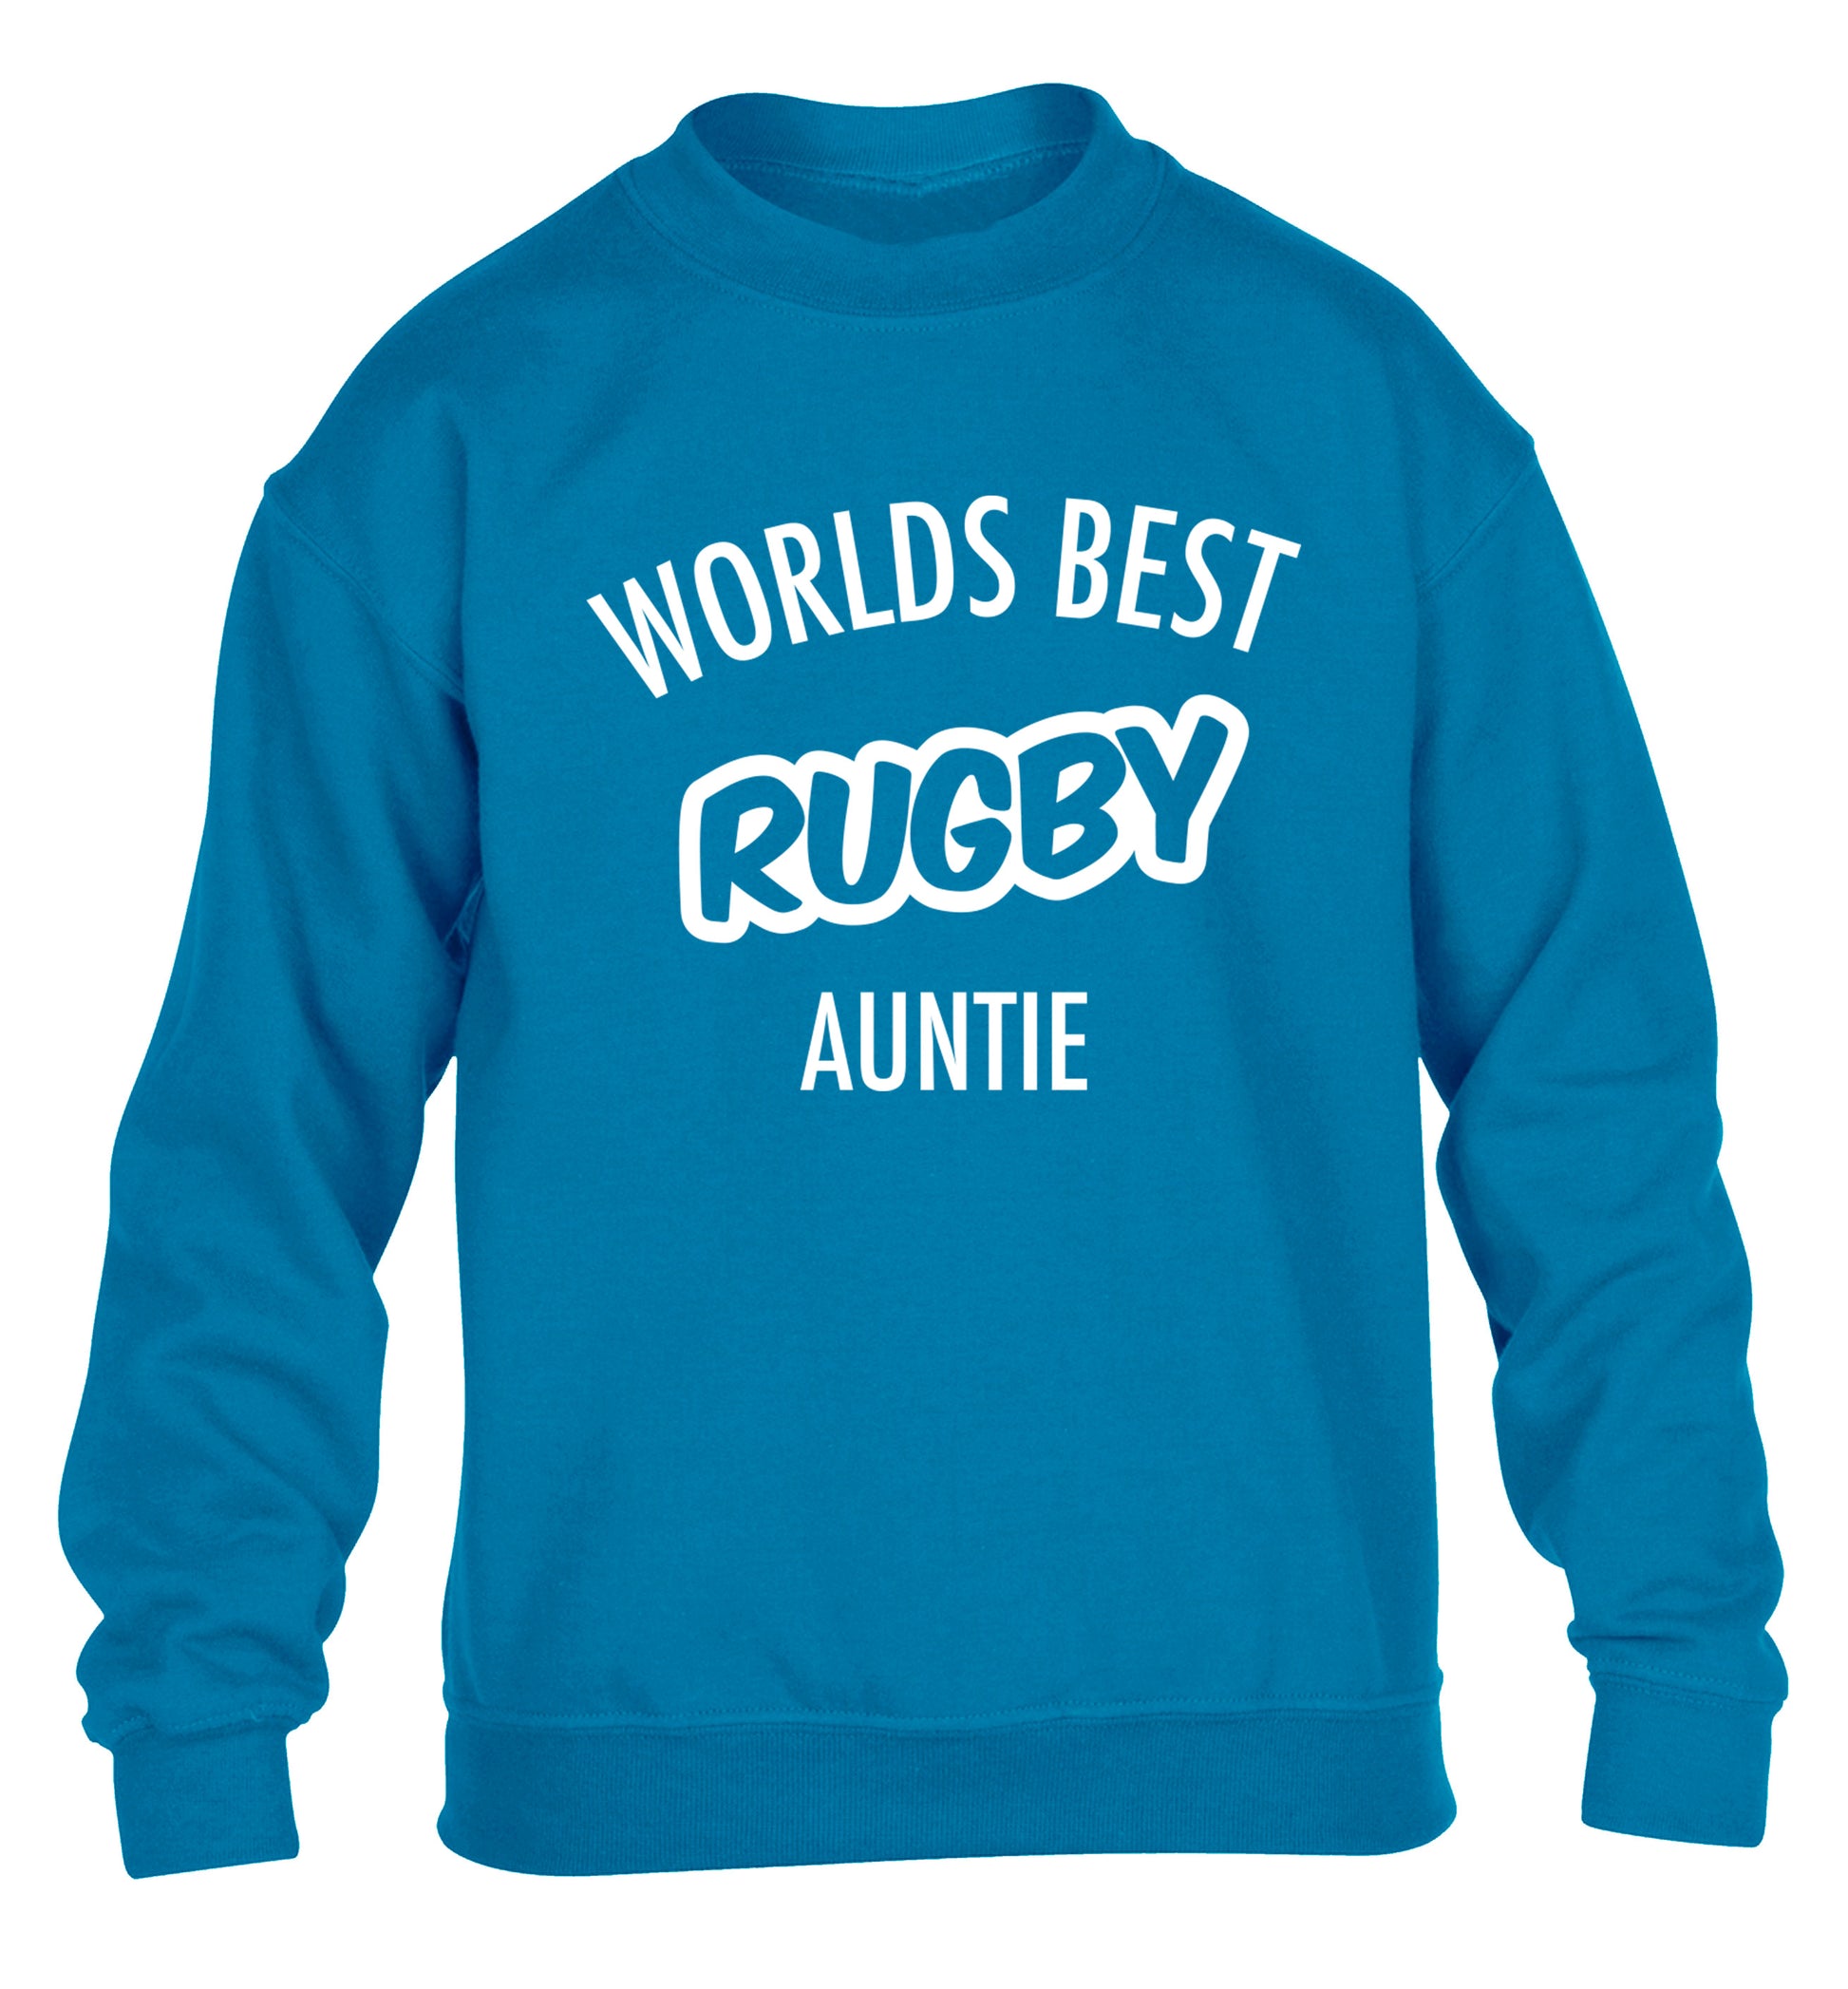 Worlds best rugby auntie children's blue sweater 12-13 Years